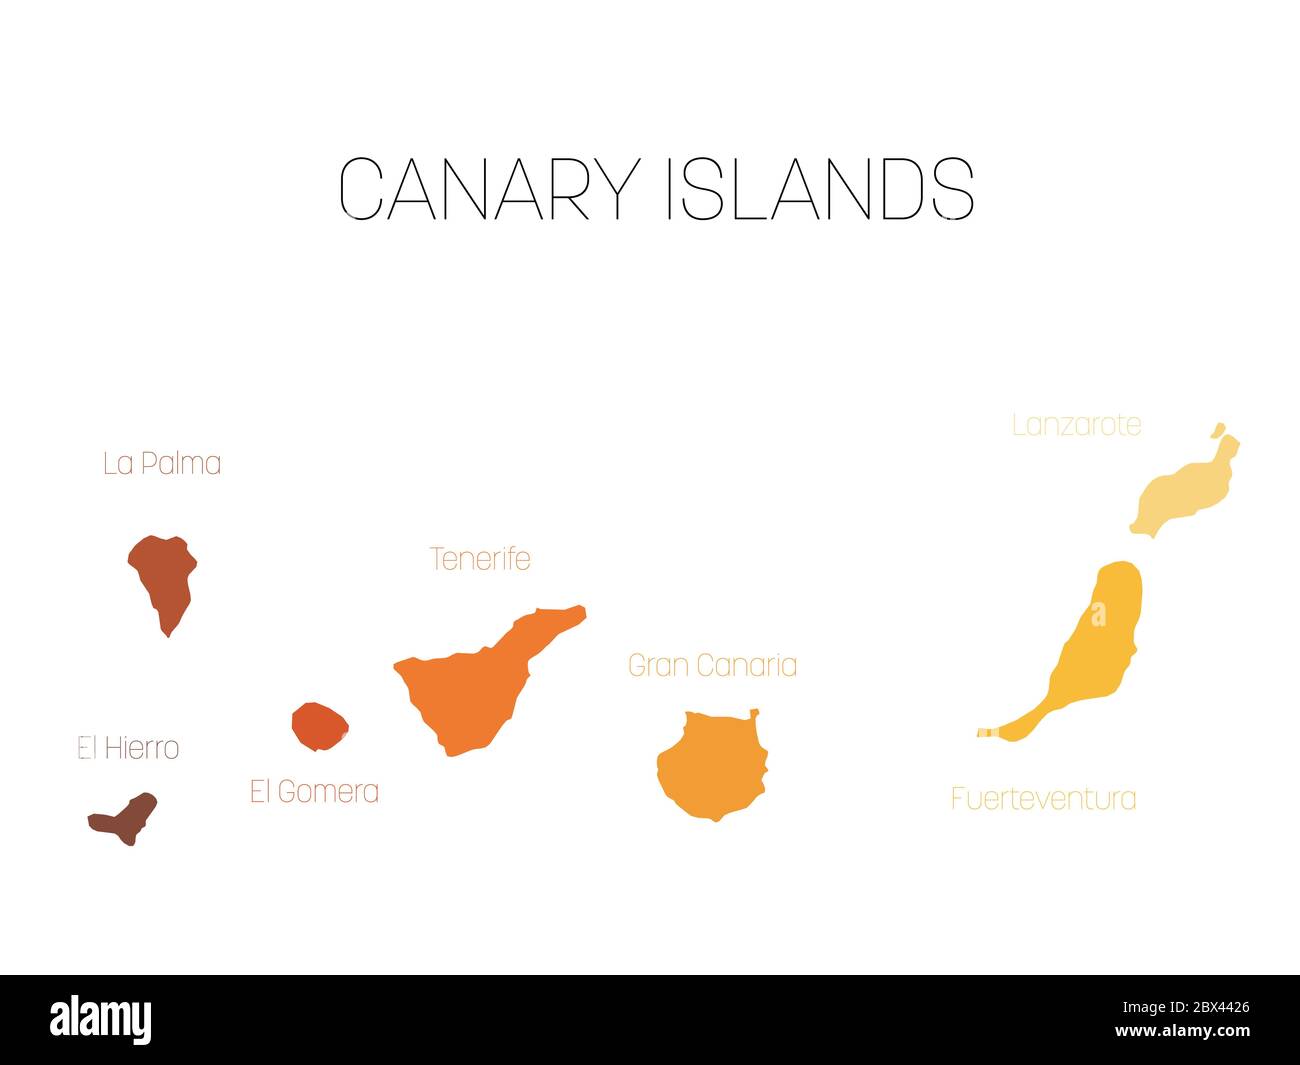 Carte des îles Canaries, Espagne, avec les étiquettes de chaque île - El Hierro, la Palma, la Gomera, Tenerife, Gran Canaria, Fuerteventura et Lanzarote. Silhouette vectorielle sur fond blanc. Illustration de Vecteur